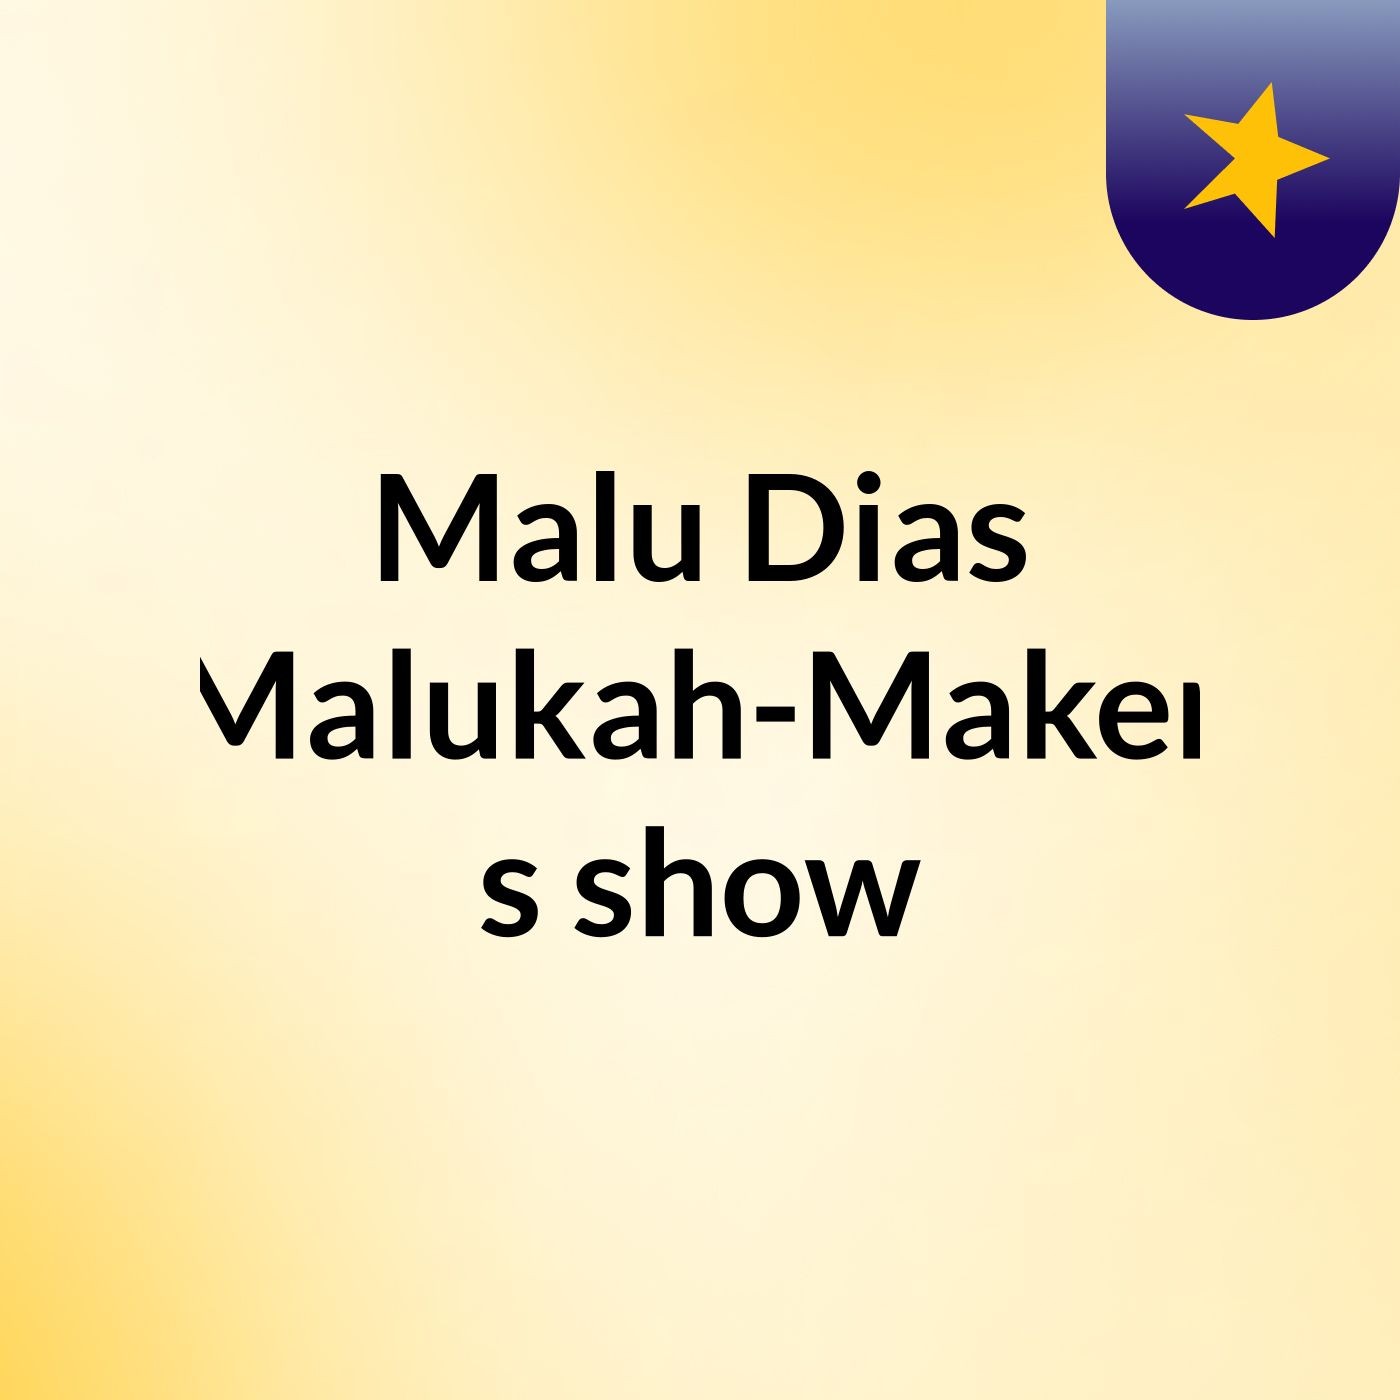 Malu Dias (Malukah-Maker)'s show